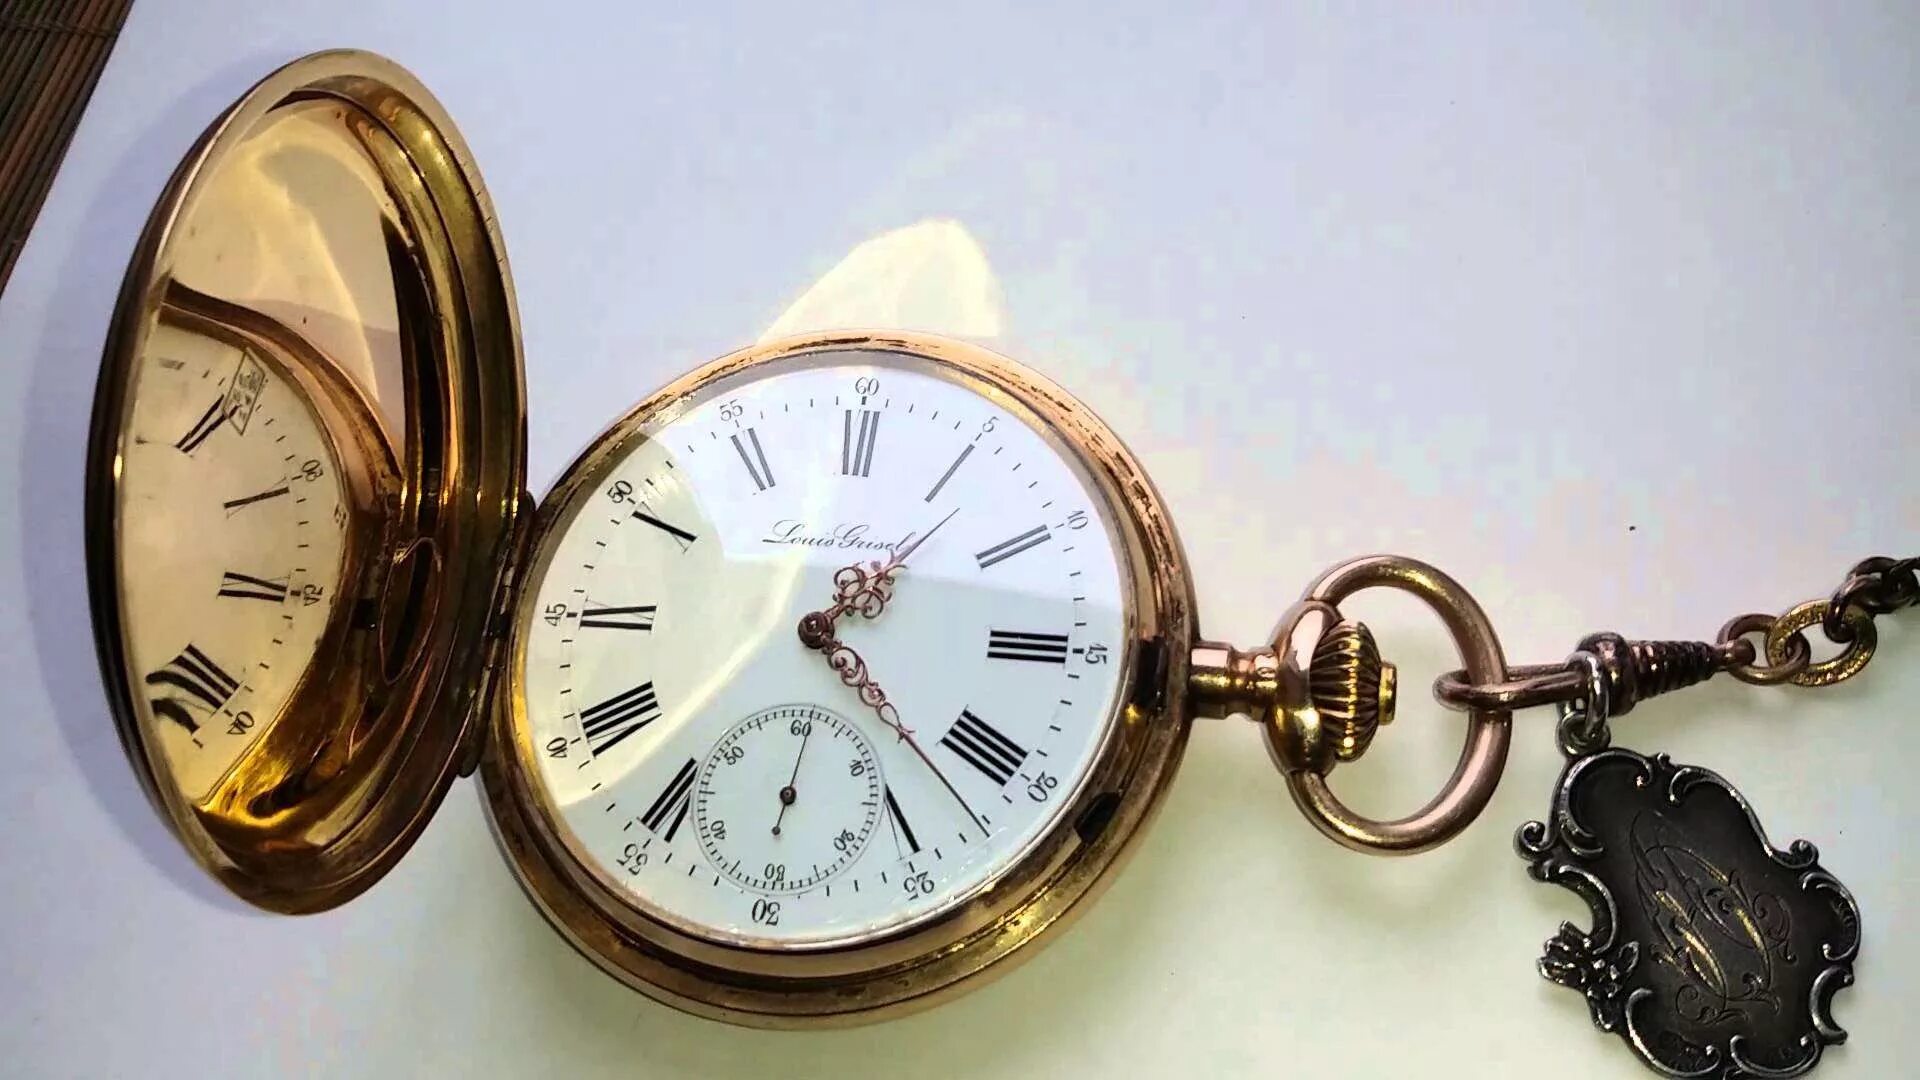 Антикварные часы. Золотые часы. Антикварные часы Санкт-Петербурга. Комиссионный магазин часов